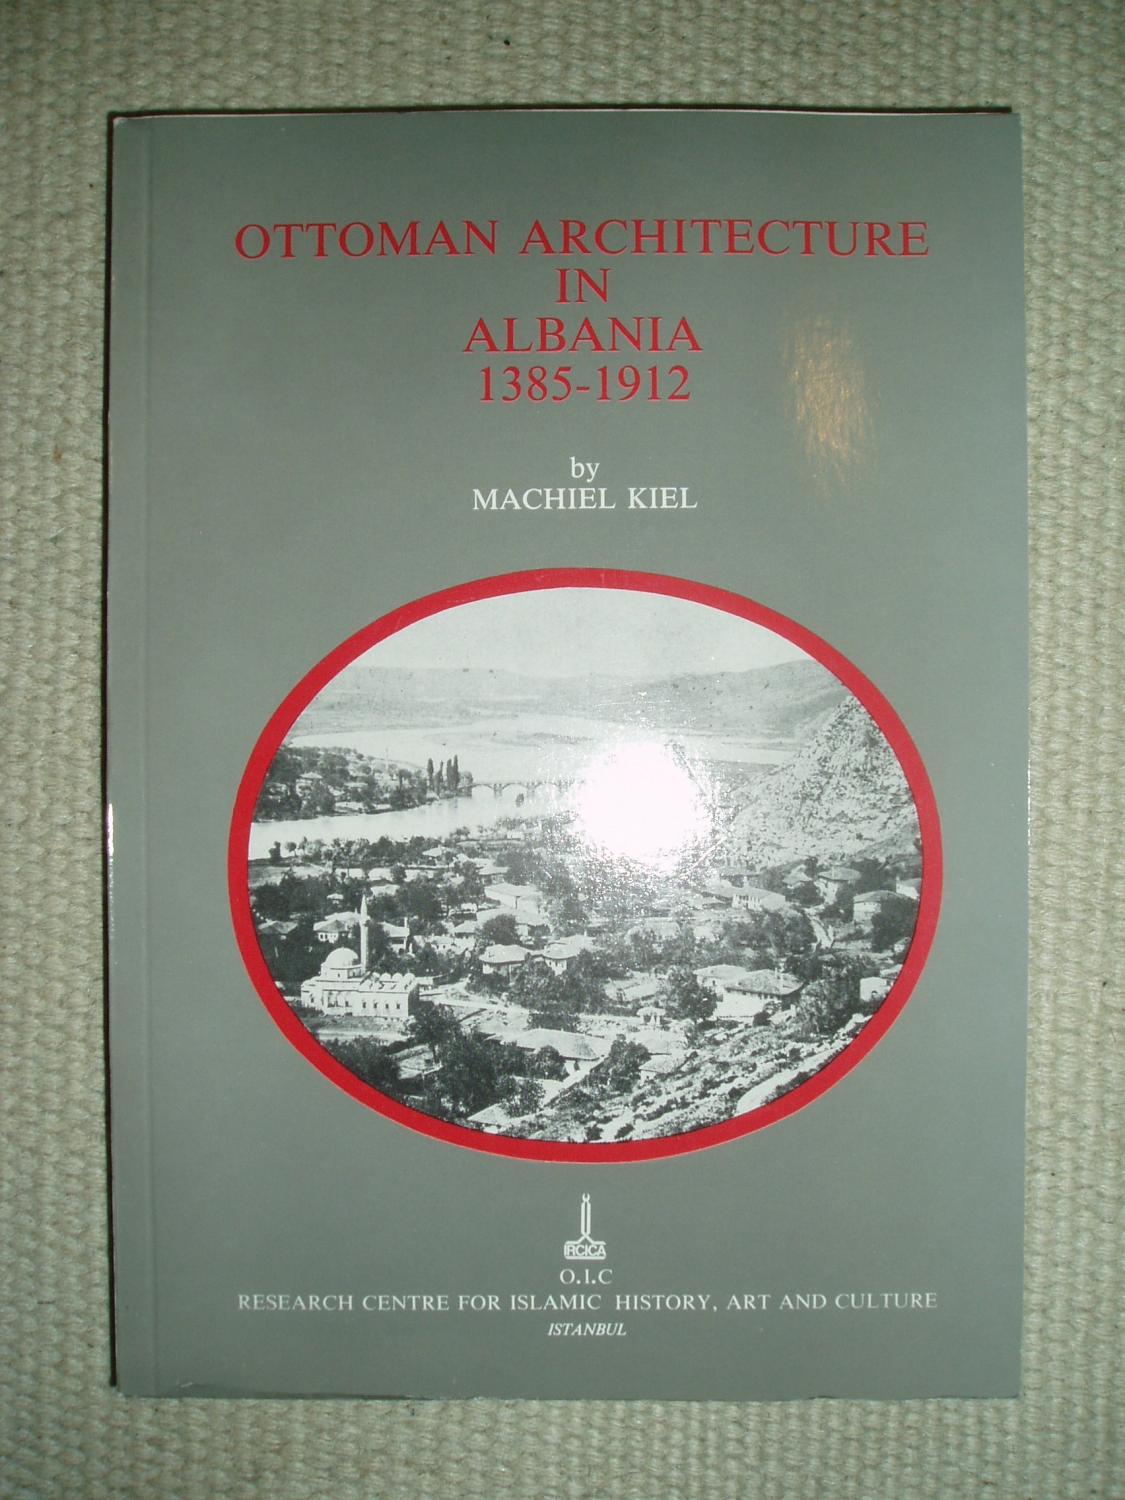 Ottoman architecture in Albania, 1385-1912